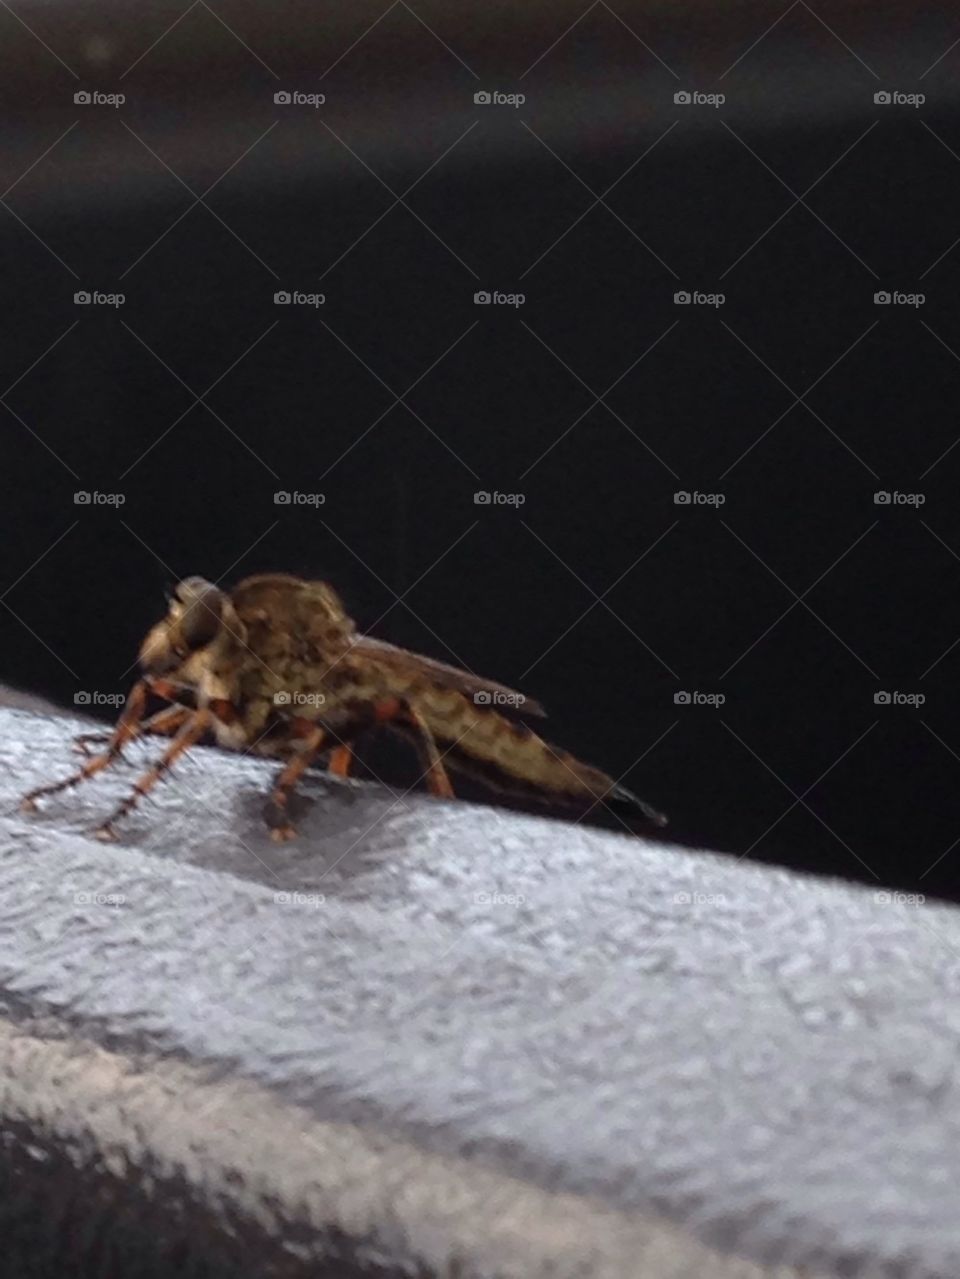 A bug